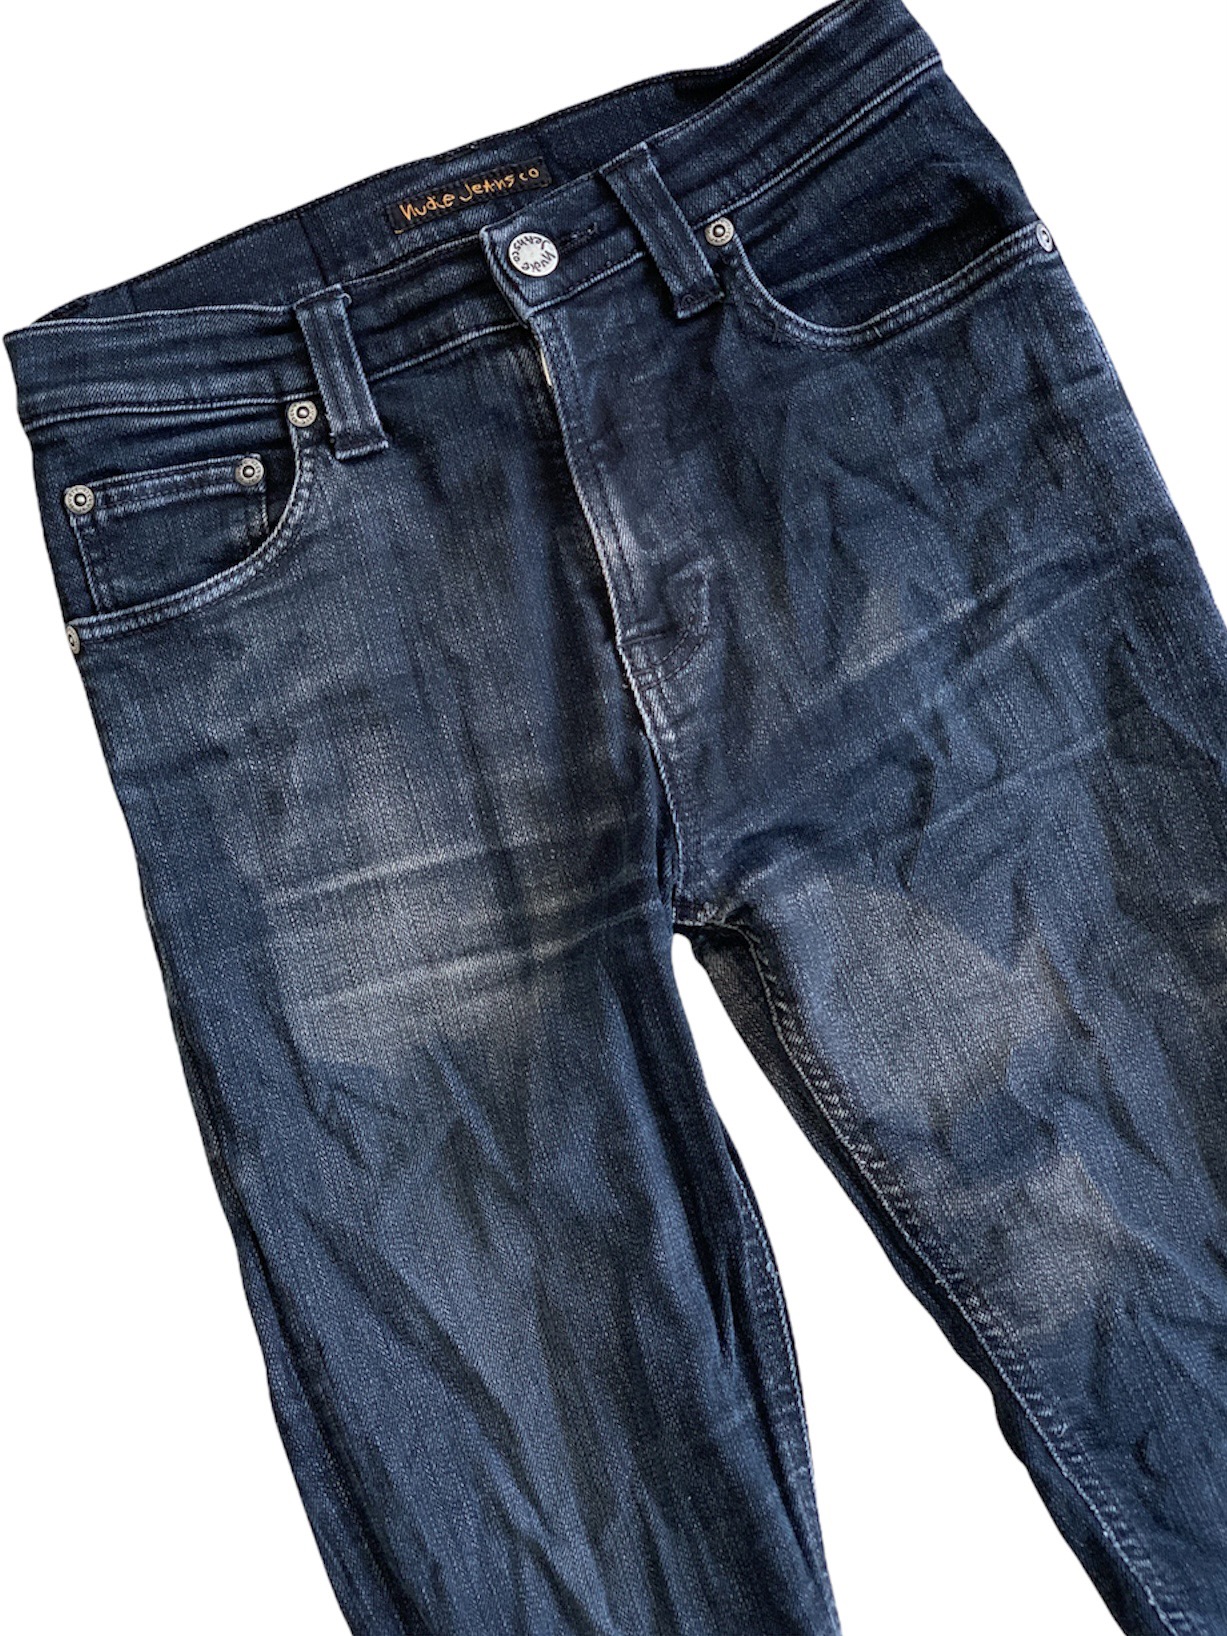 Nudie Jeans Distressed Slim-Fits Denim Pant - 3